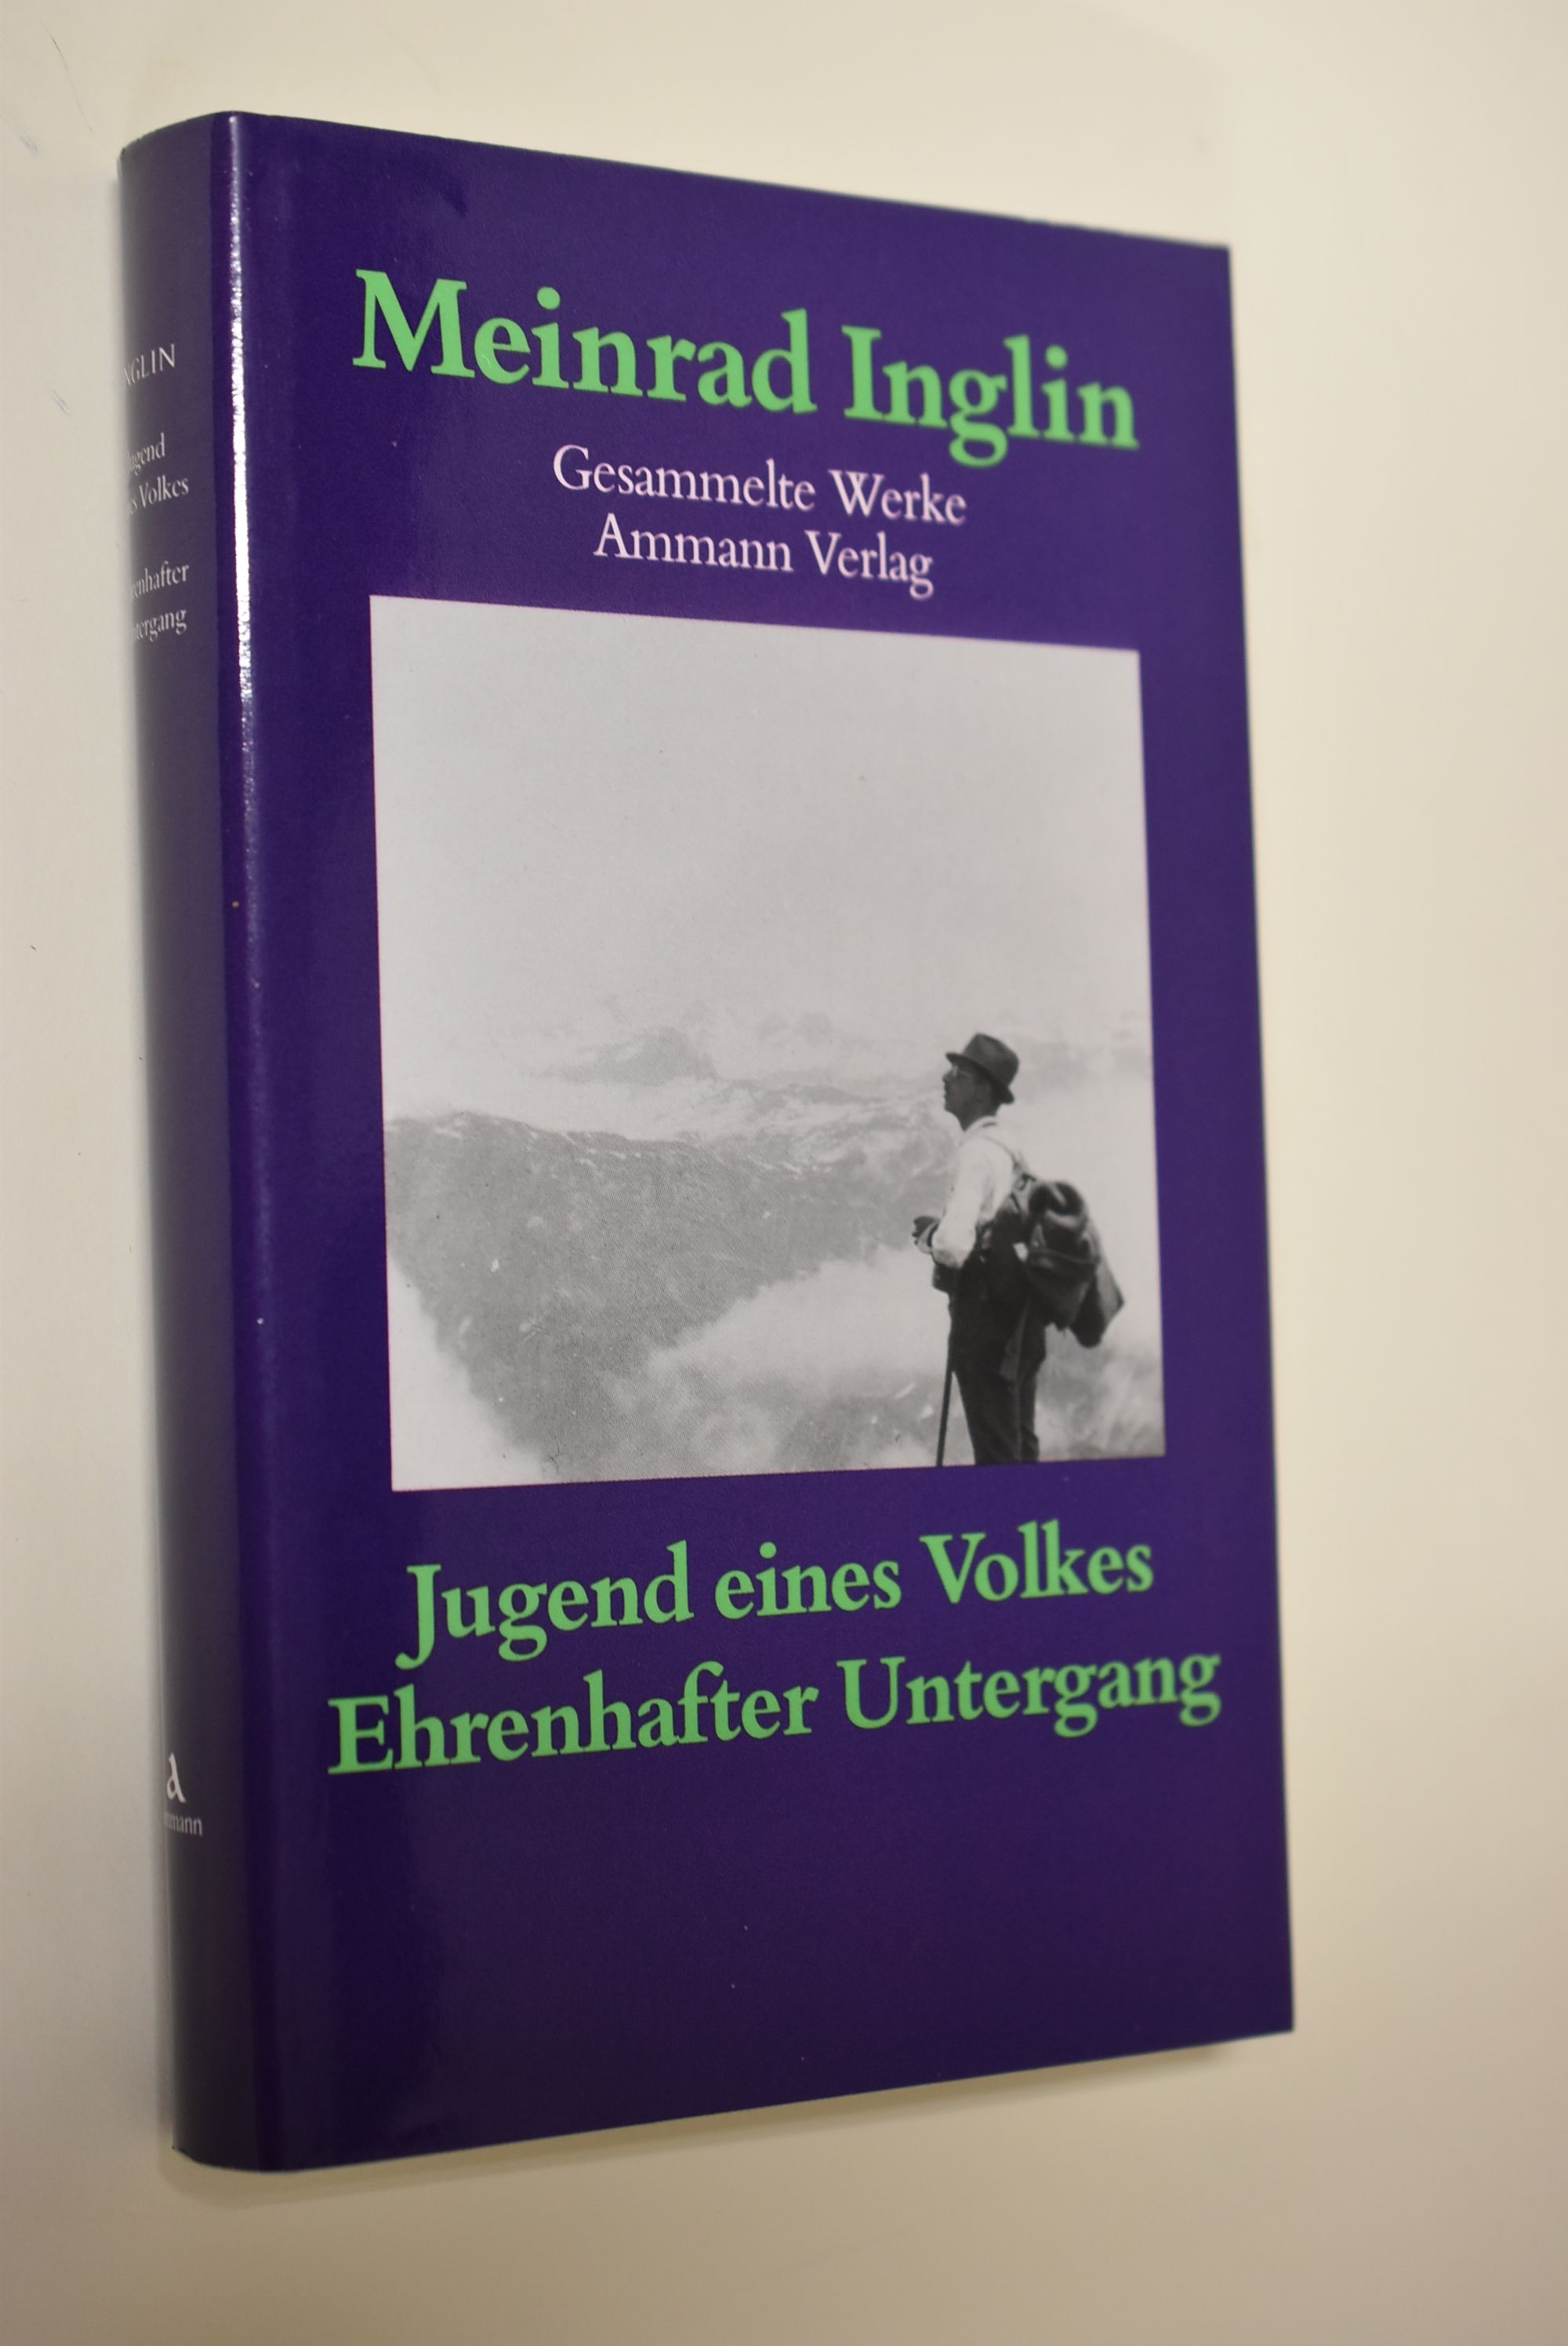 Inglin, Meinrad: Gesammelte Werke Band 3: Jugend eines Volkes : 5 Erzählungen; Ehrenhafter Untergang : Erzählung - Inglin, Meinrad